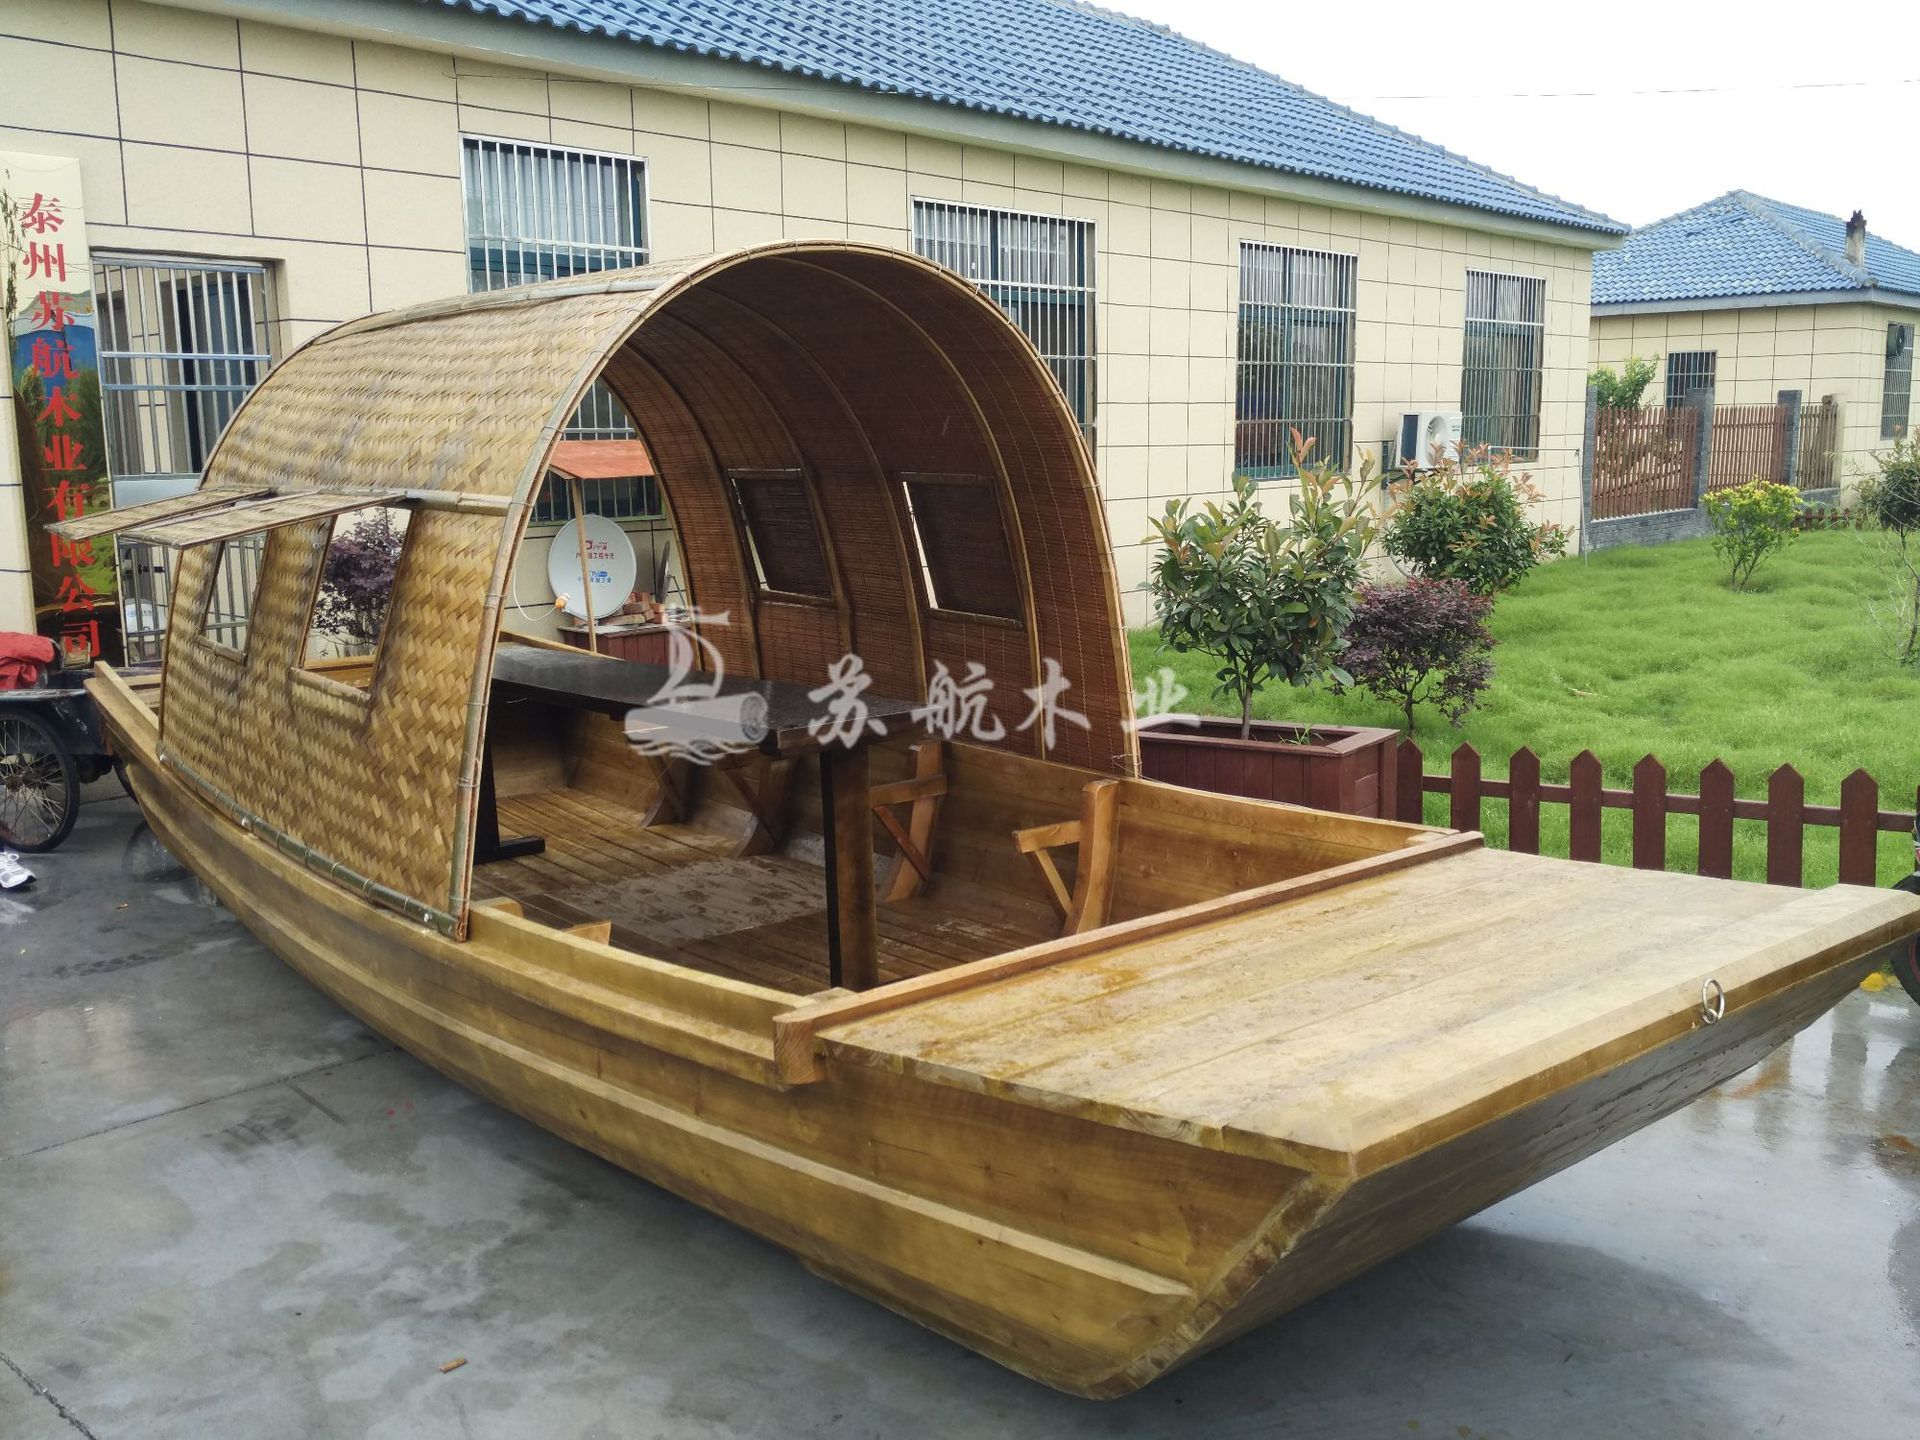 厂家直销7米手划木船 水上琵琶表演船 仿古做旧木船 10人电动观光游船